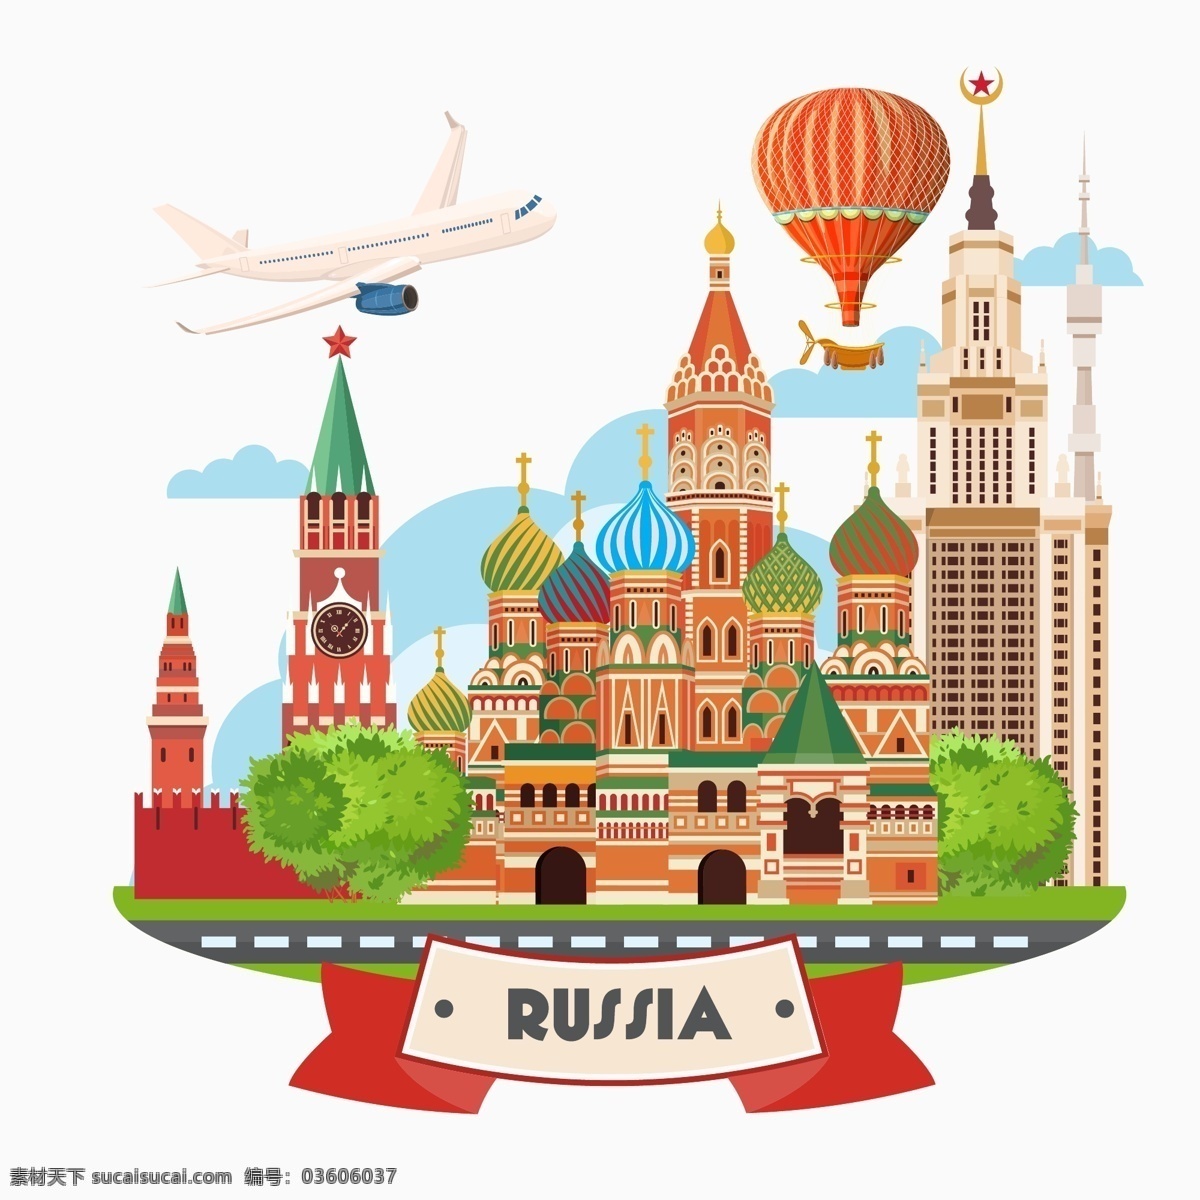 创意 俄罗斯 建筑 插画 旅行 城堡 飞机 热气球